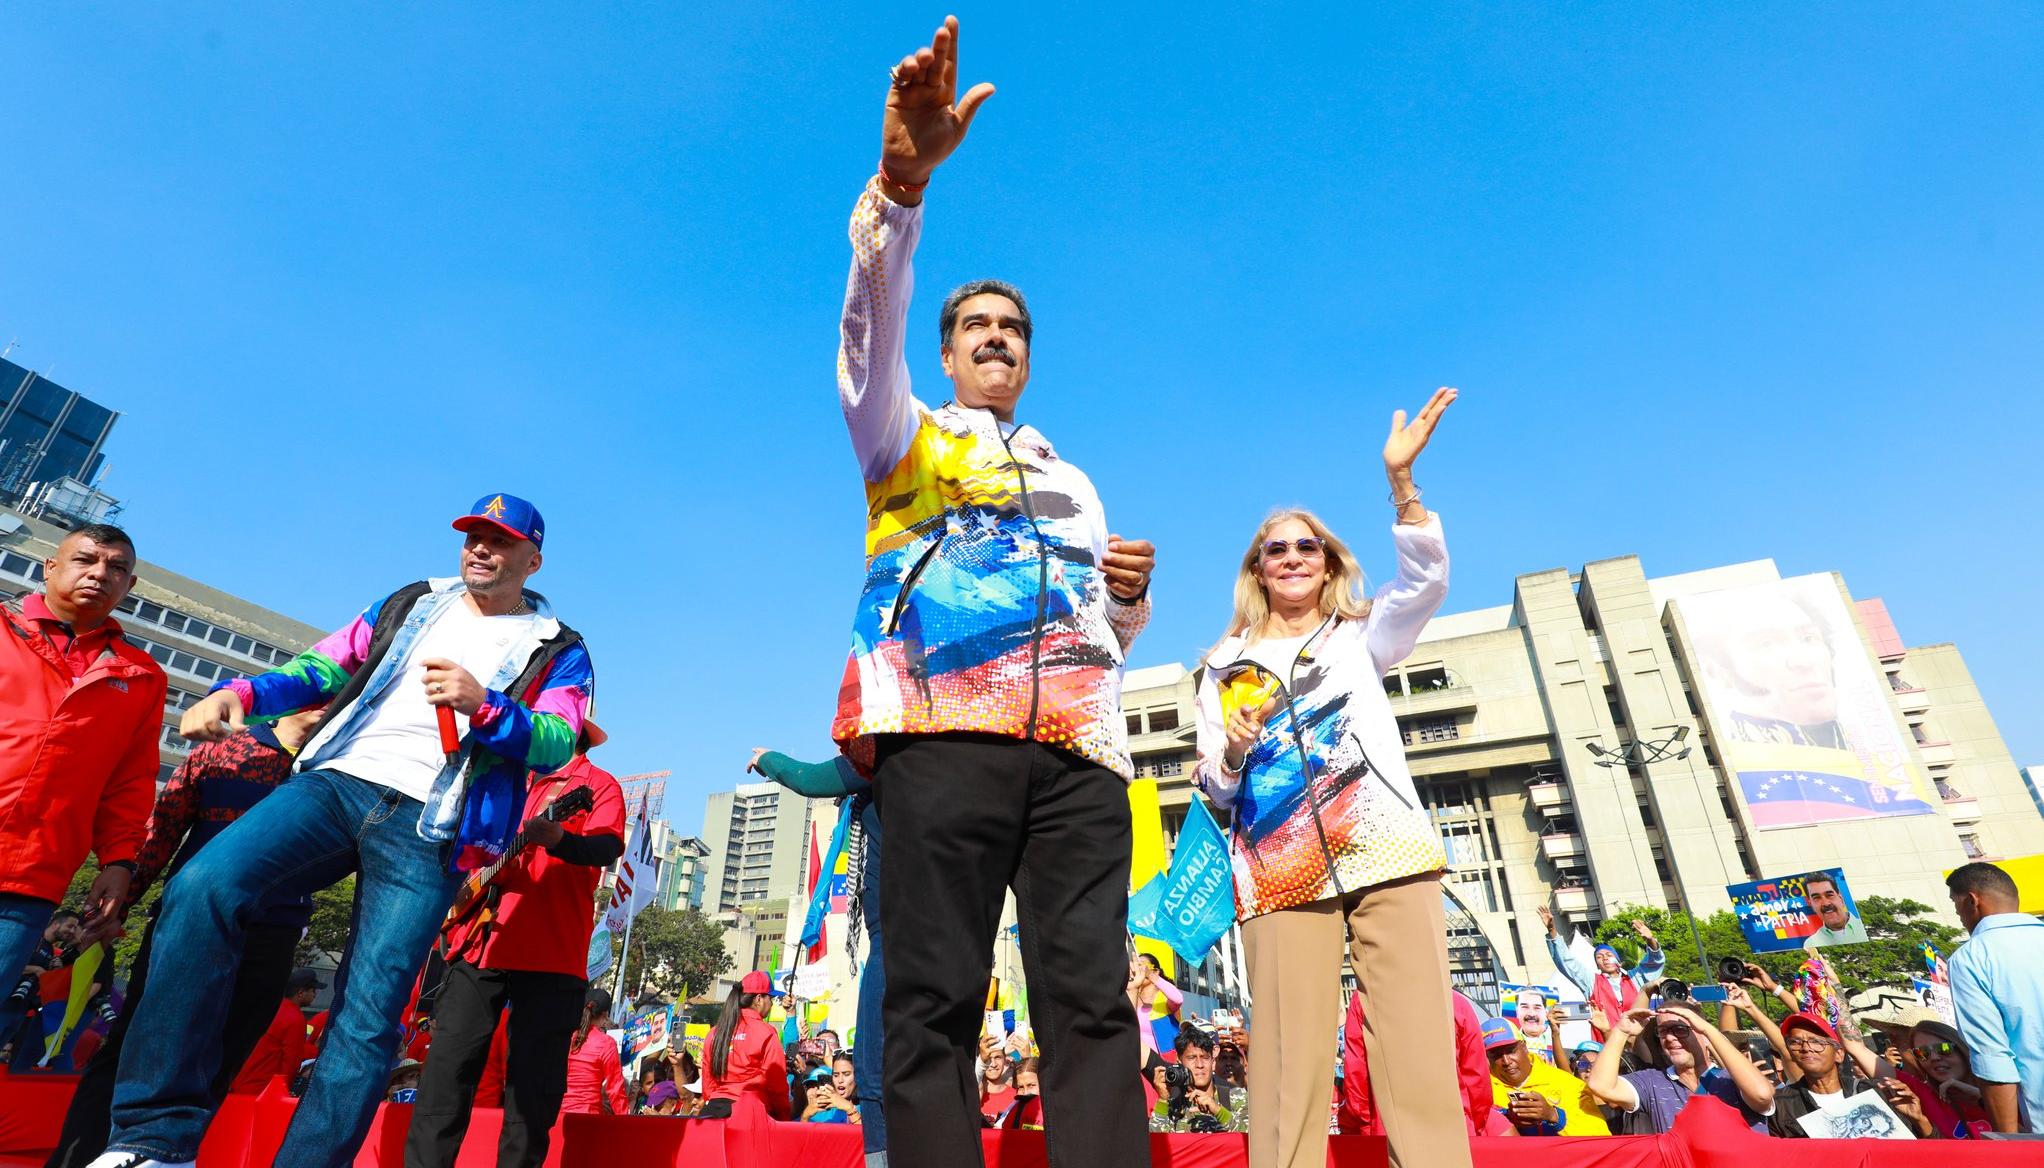 El Presidente de Venezuela, Nicolás Maduro.